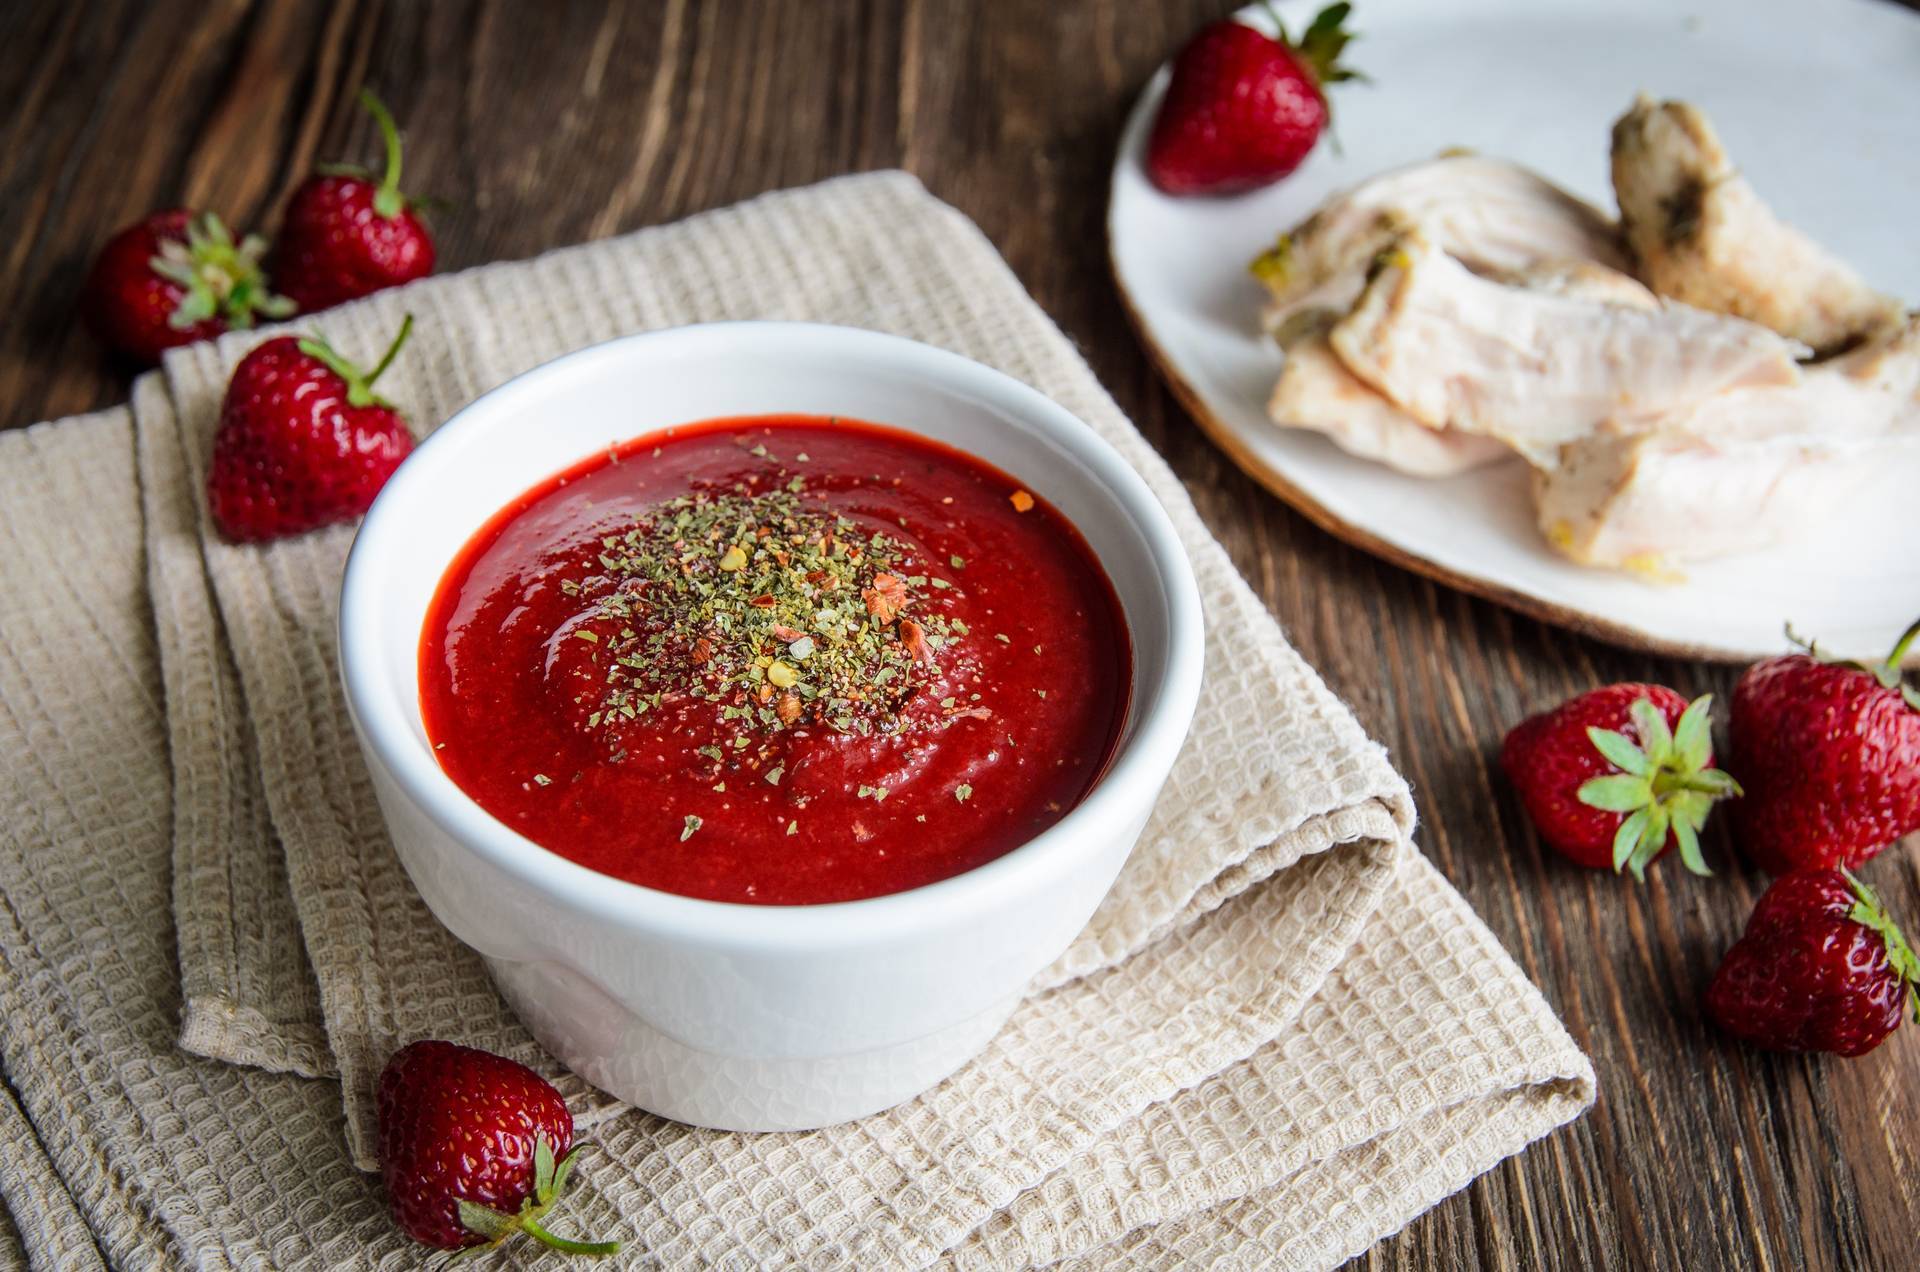 Домашние соусы к мясу и рыбе: рецепты с фото. как приготовить недорогой и полезный соус в домашних условиях?